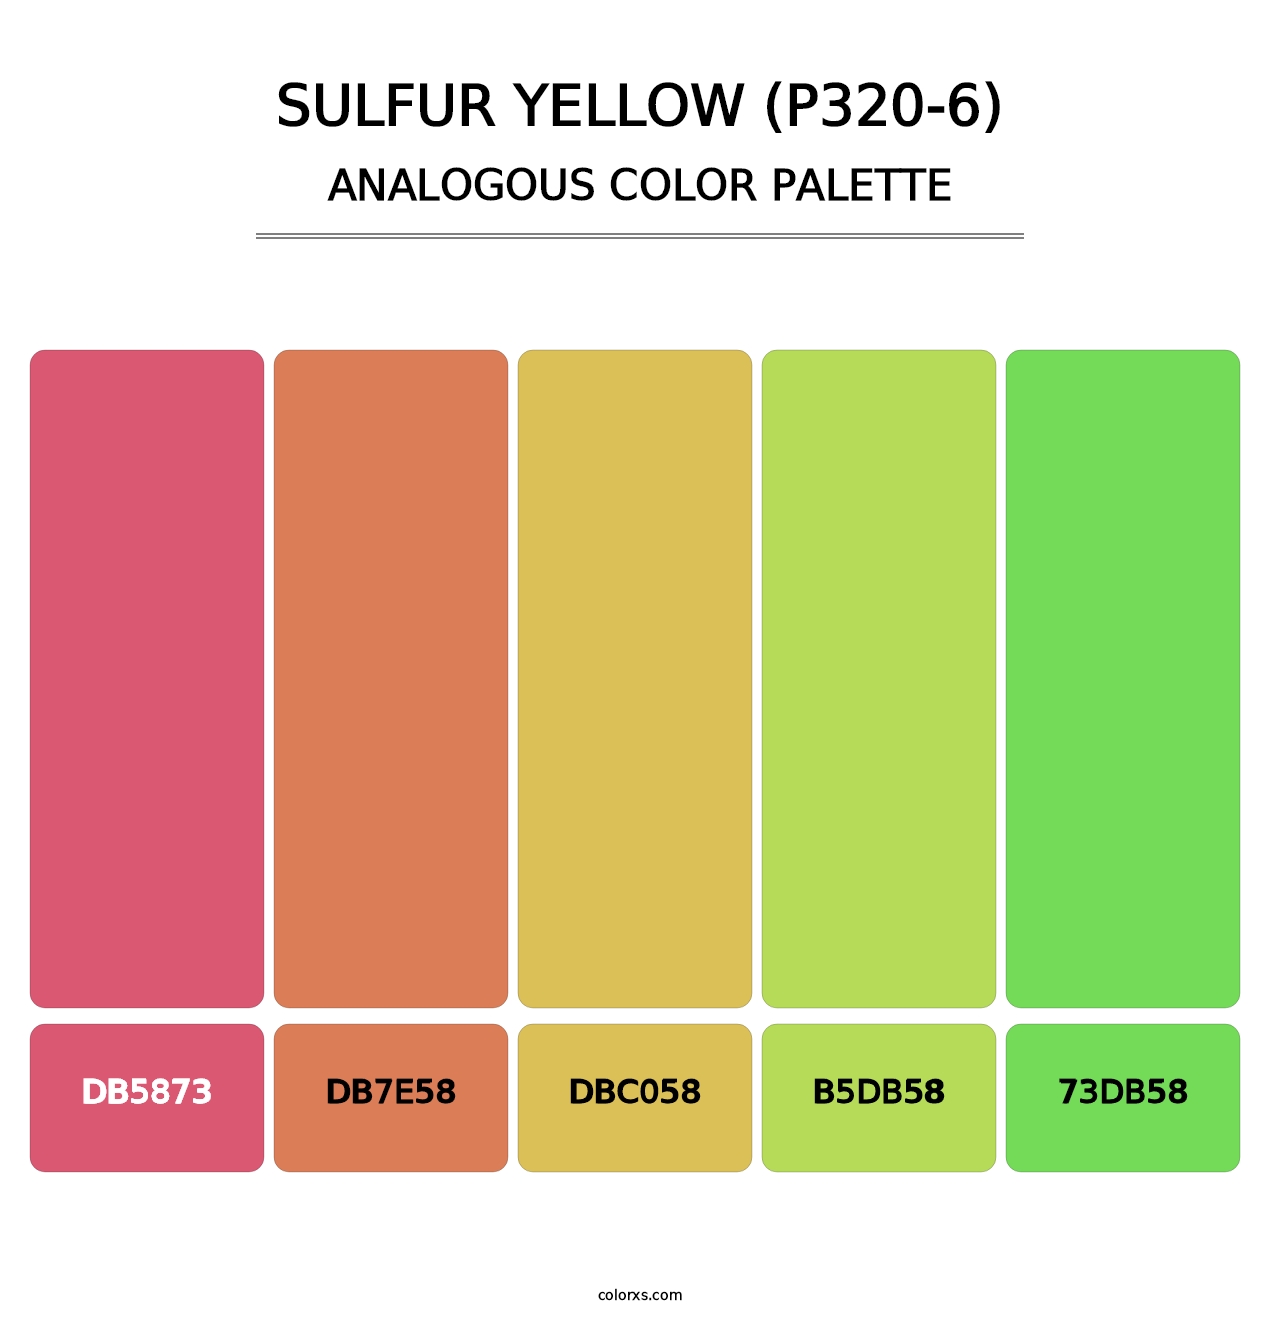 Sulfur Yellow (P320-6) - Analogous Color Palette